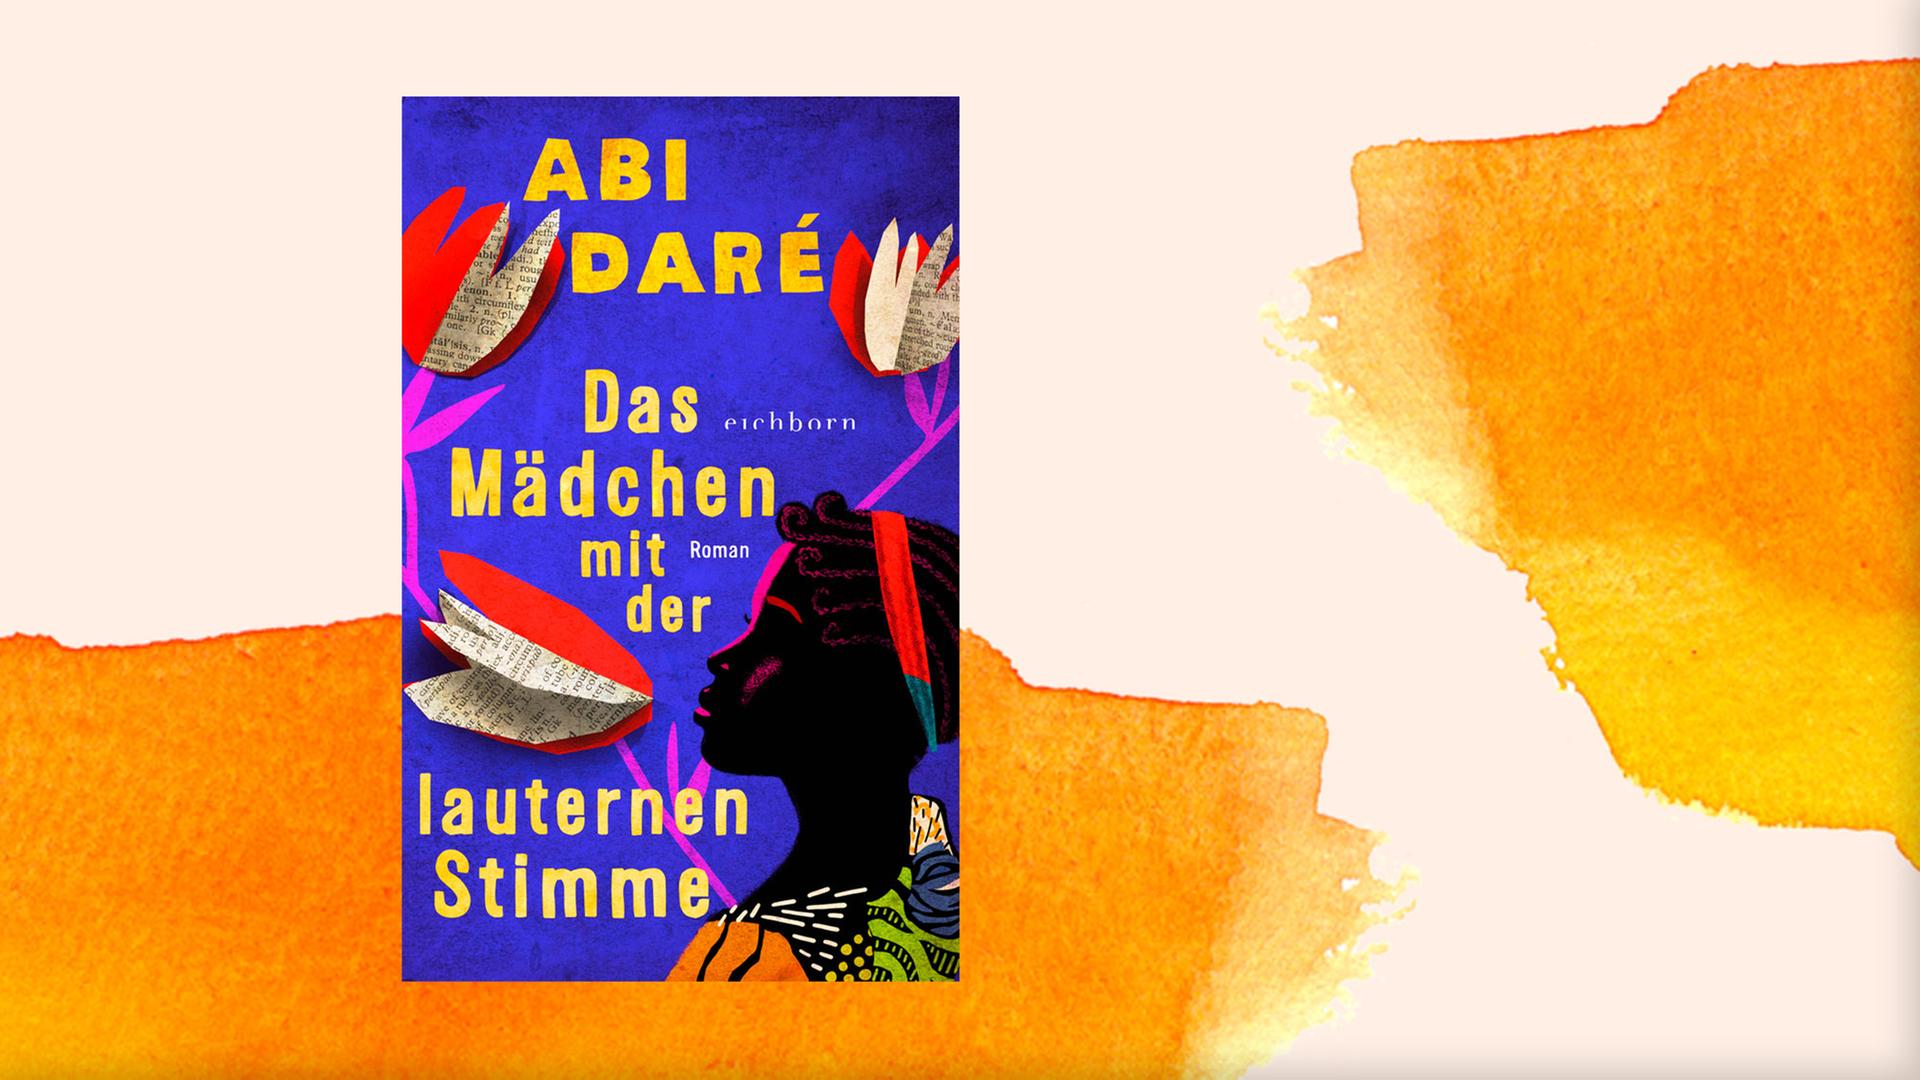 Cover von "Das Mädchen mit der lauternen Stimme" vor orangefarbenem Aquarellhintergrund. Das bunte, collagenhafte Cover zeigte eine junge schwarze Frau zwischen Blumen aus Buchseiten.